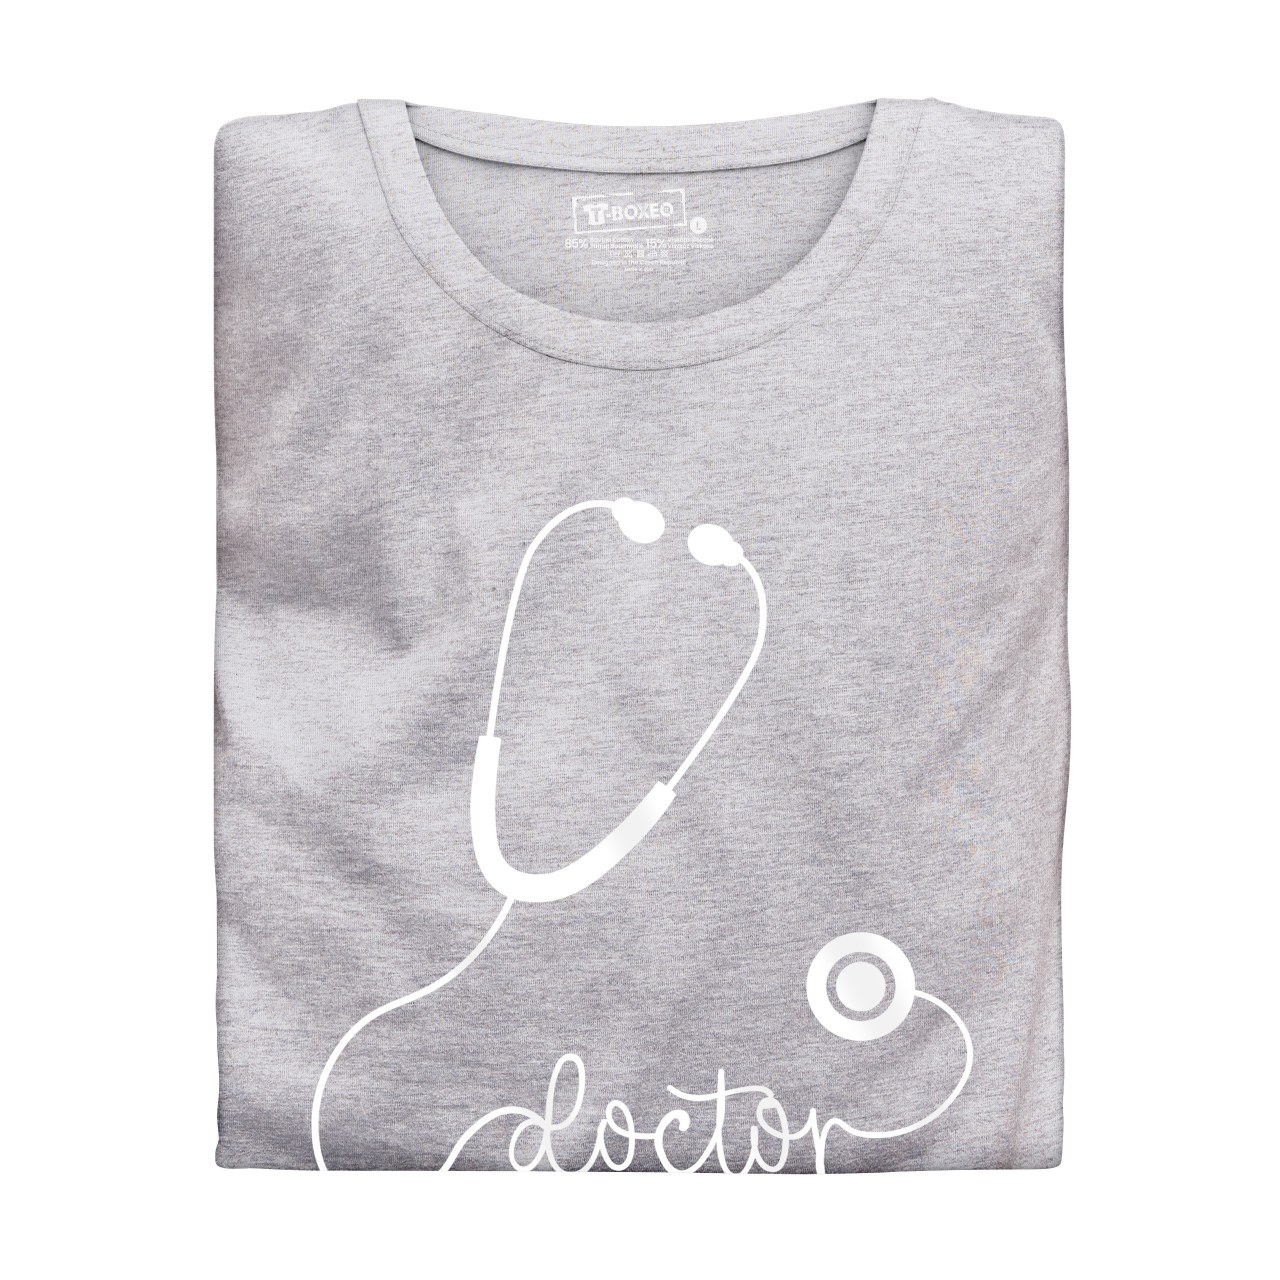 Dámské tričko s potiskem "Doctor - stetoskop"